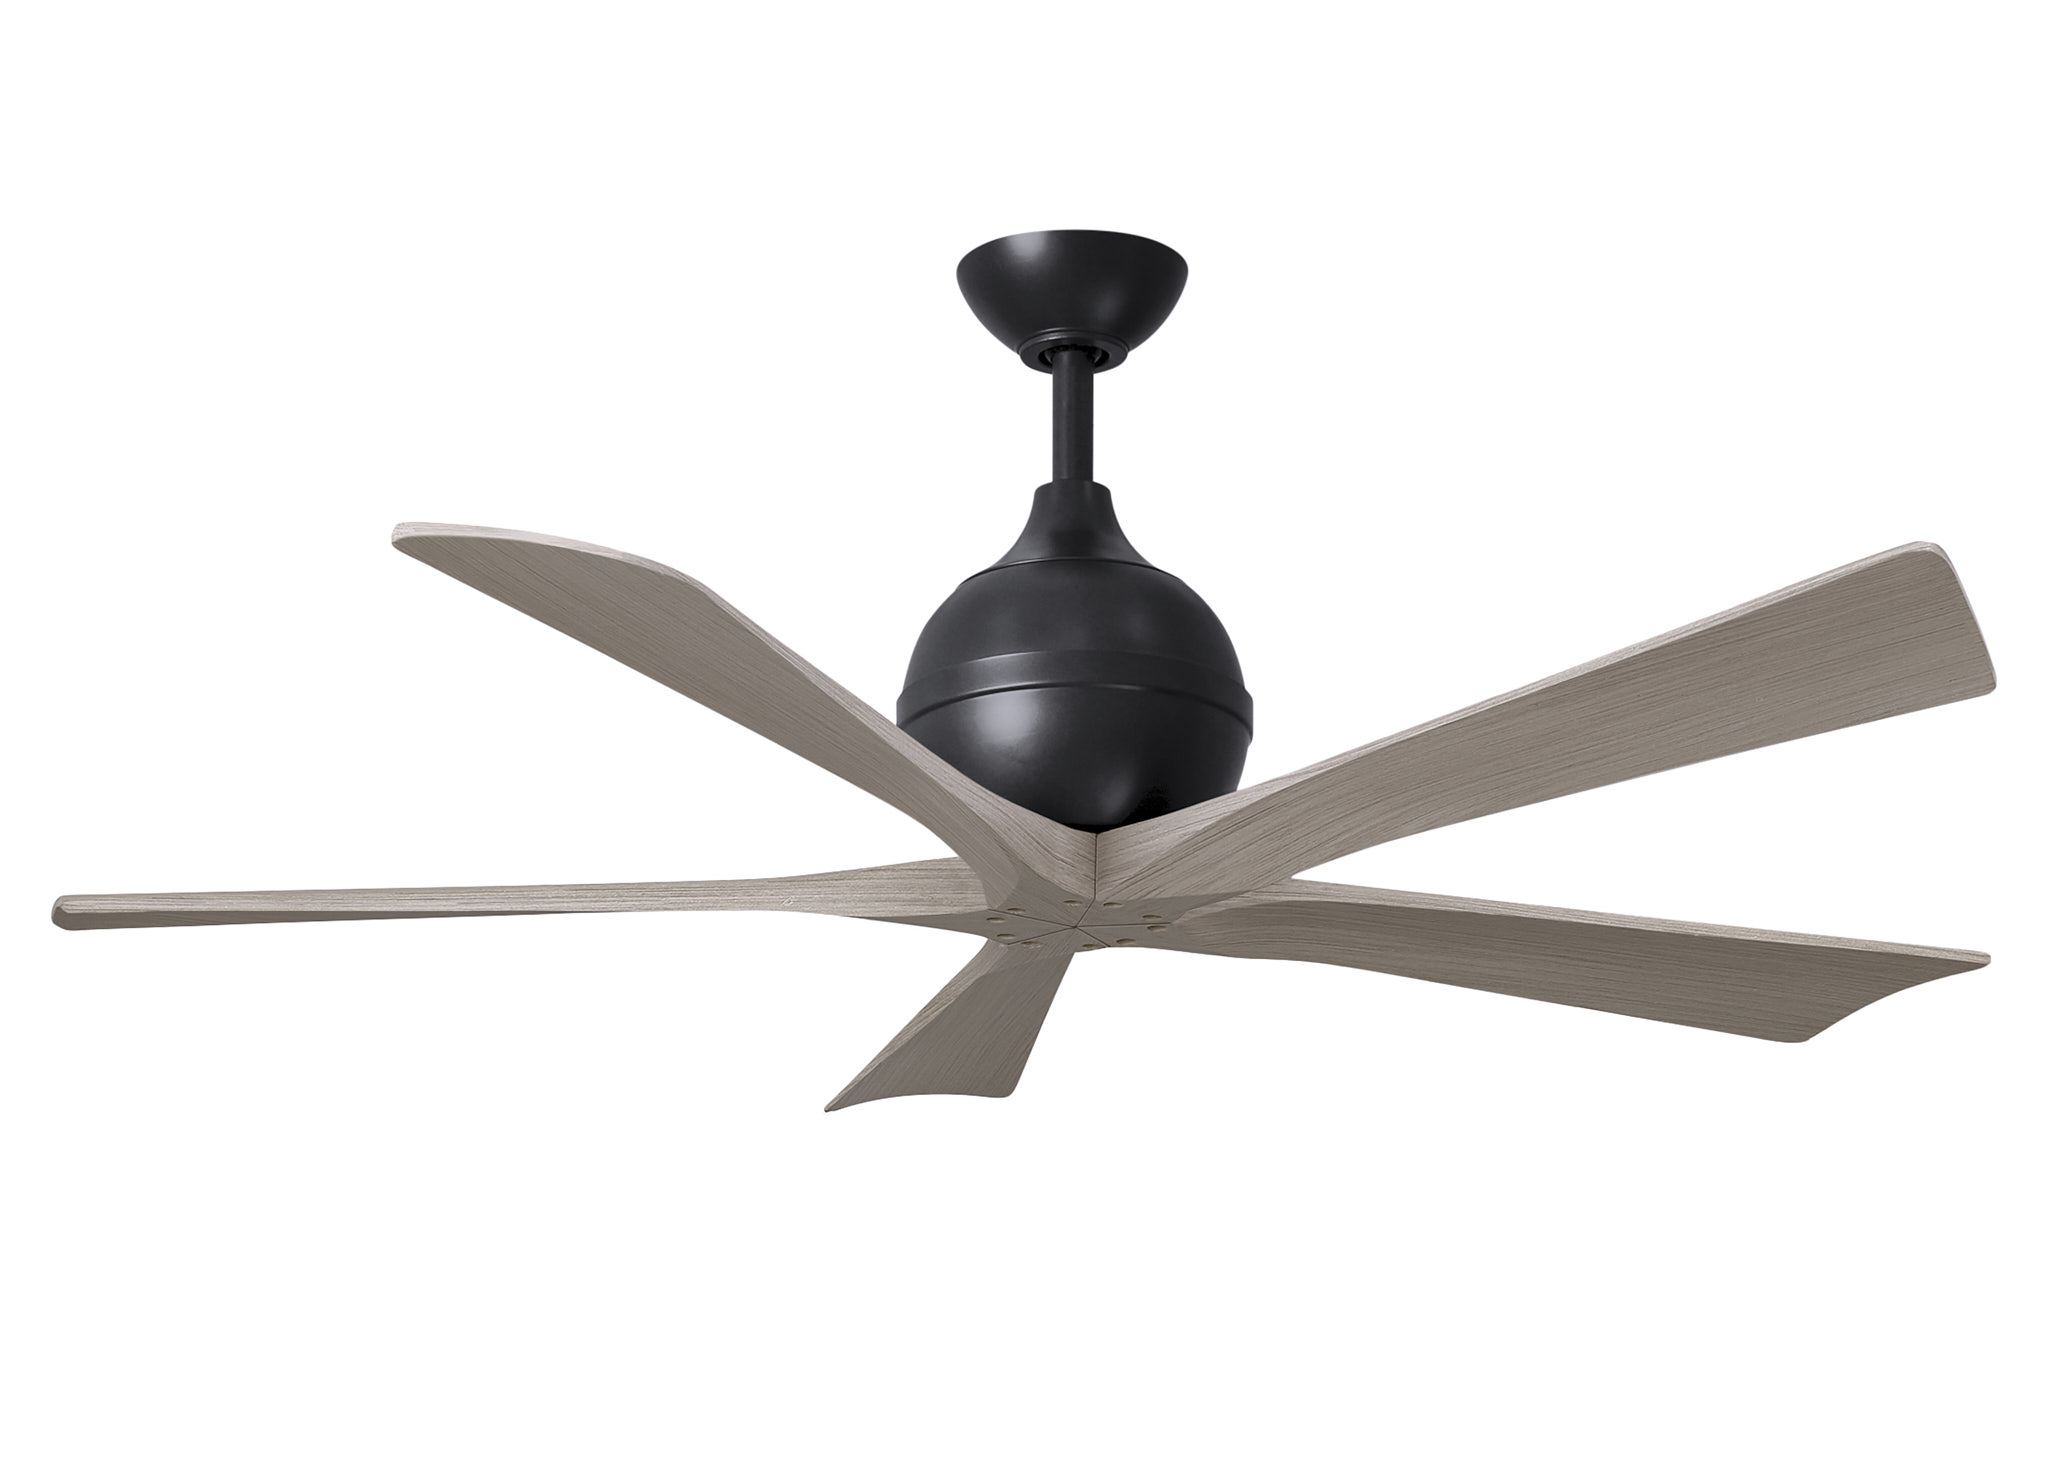 Irene-5 ceiling fan in matte black with 52